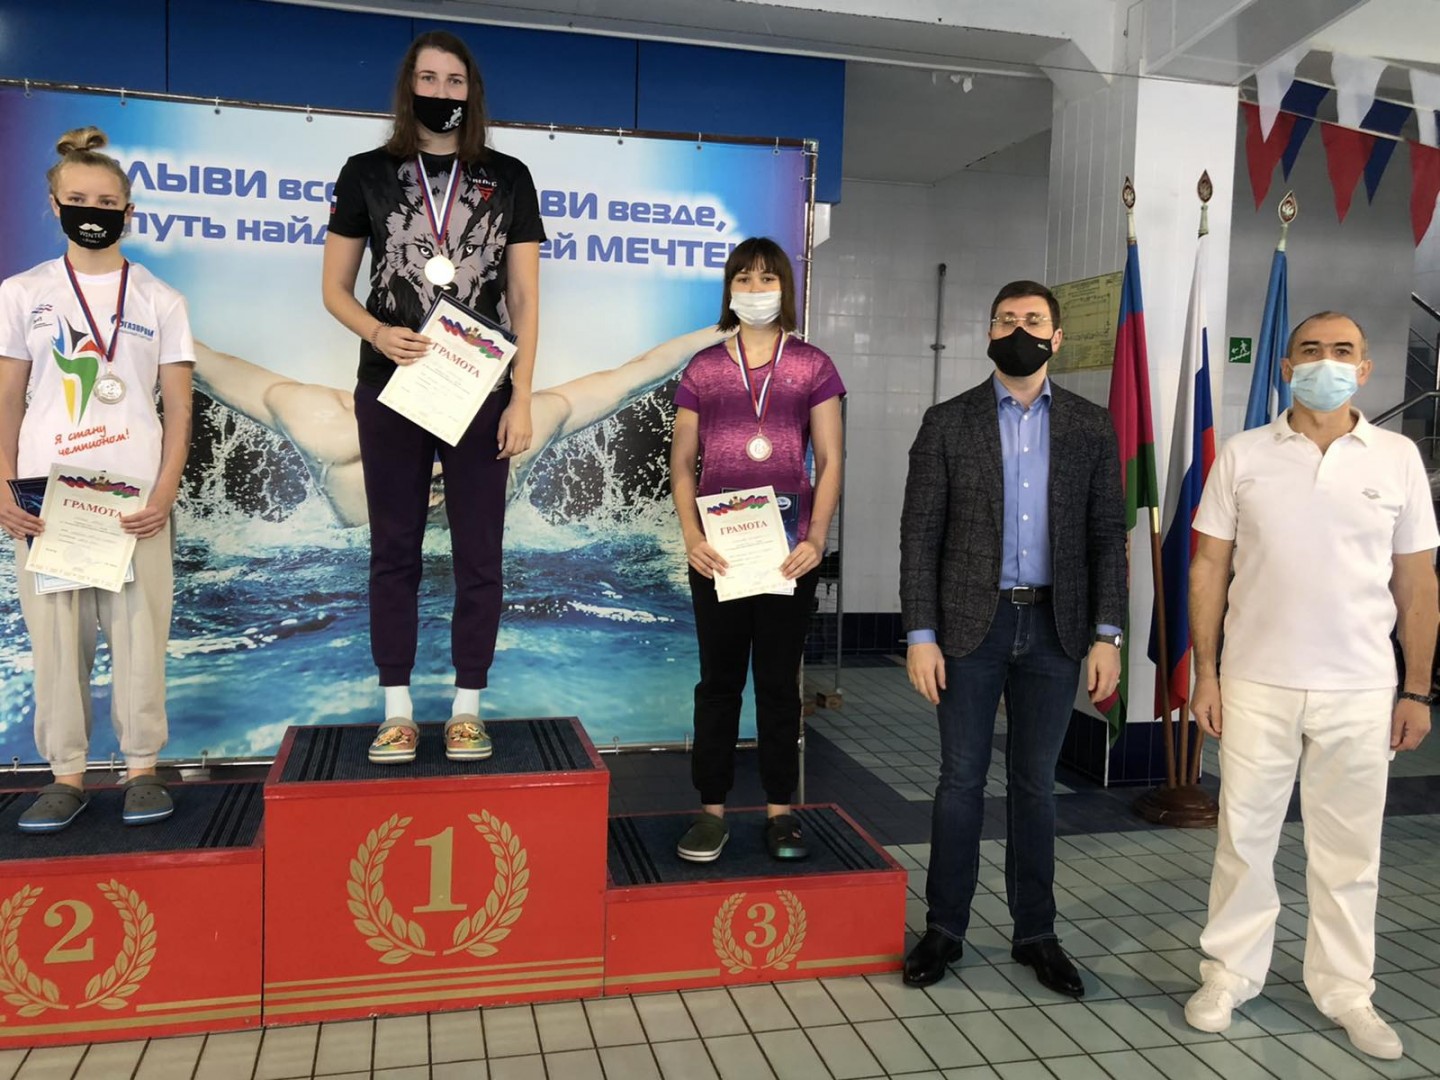 Спортсменка ДНР завоевала медали на соревнованиях по плаванию в России